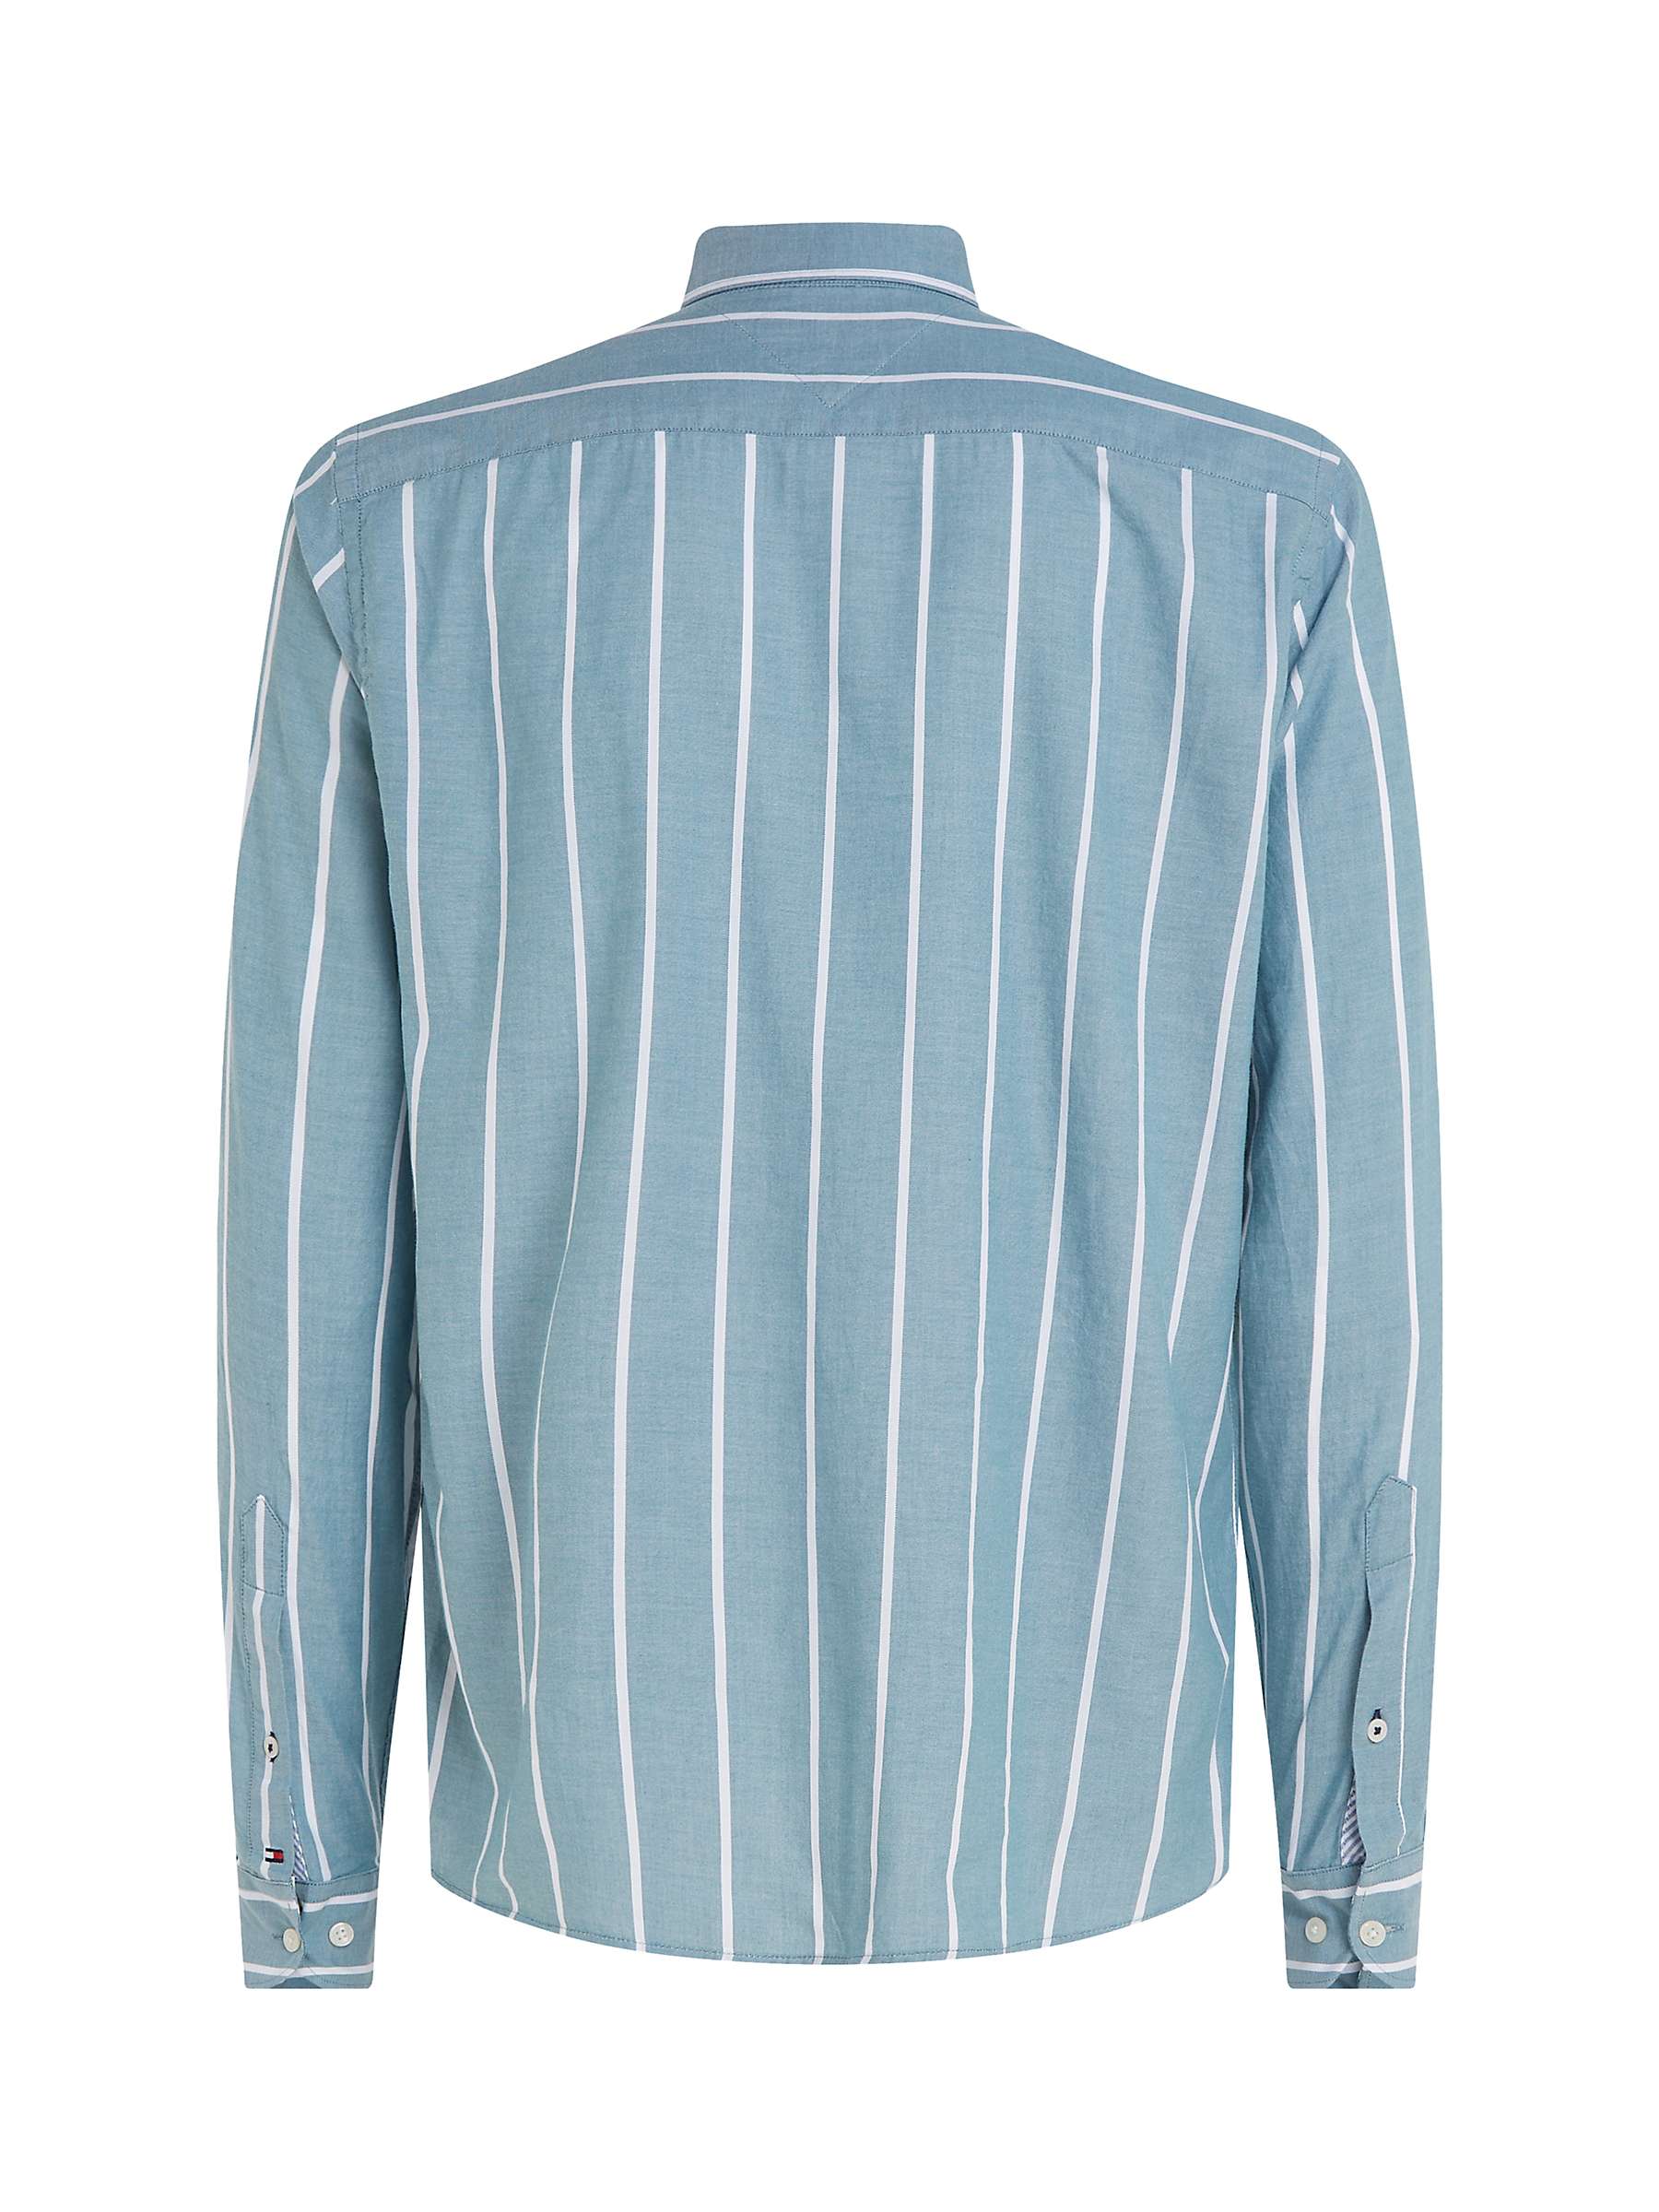 Buy Tommy Hilfiger Oxford Stripe Shirt Online at johnlewis.com